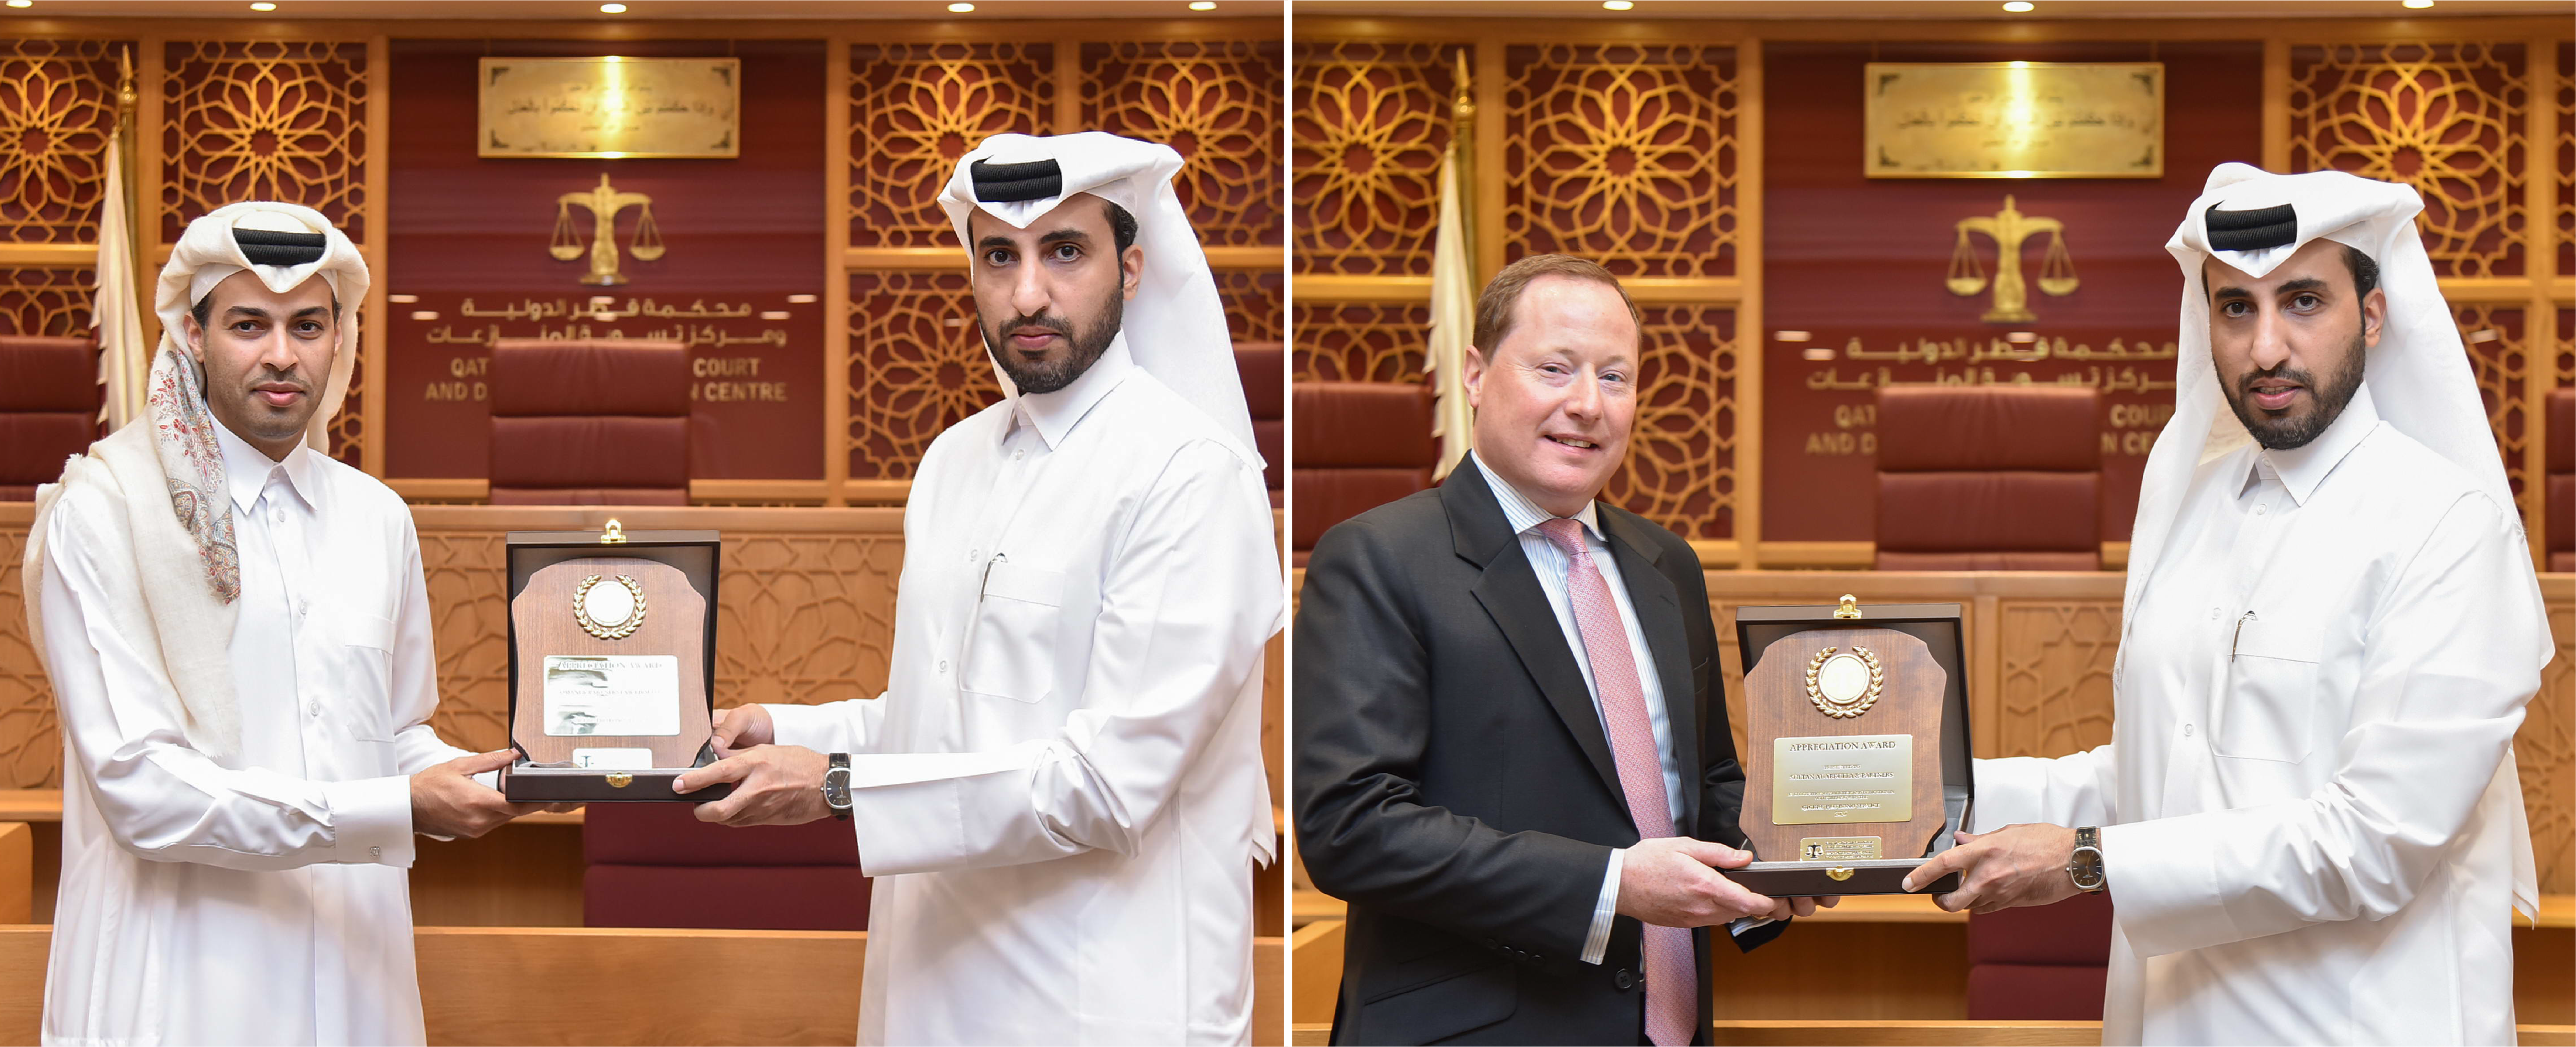 محكمة قطر الدولية تكرّم مكاتب المحامين المشاركين بمبادرة المساعدة القانونية